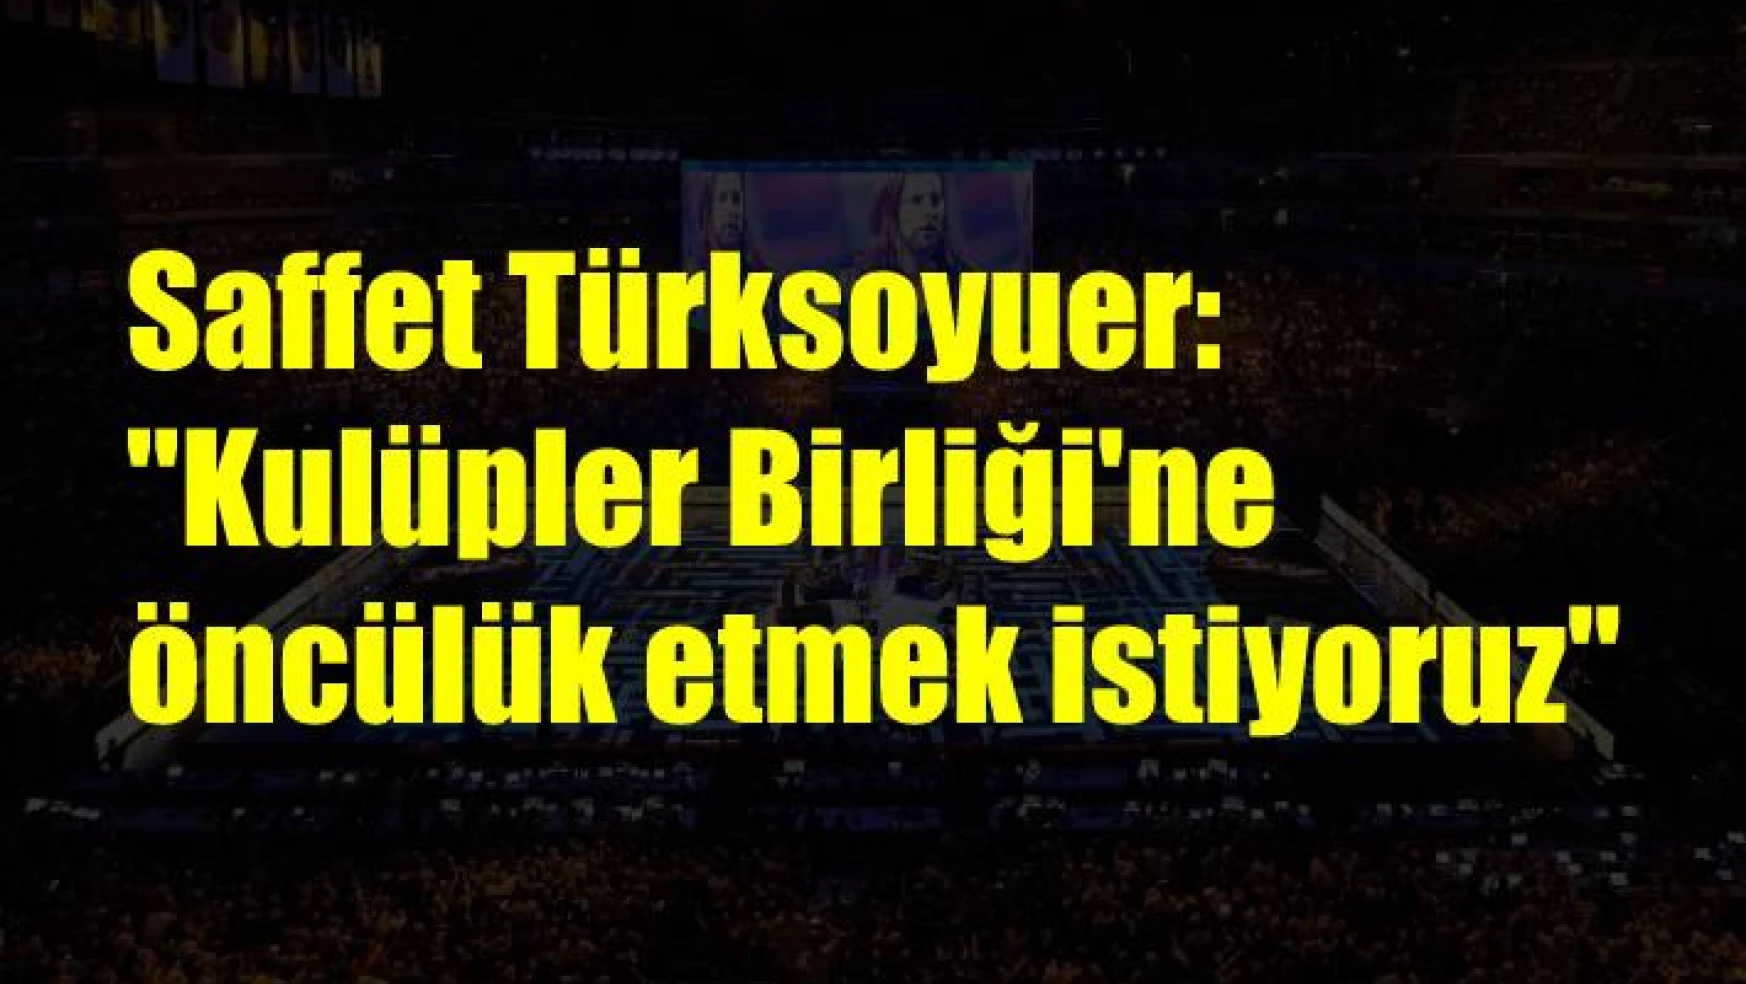 Saffet Türksoyuer: “Kulüpler Birliği’ne öncülük etmek istiyoruz”